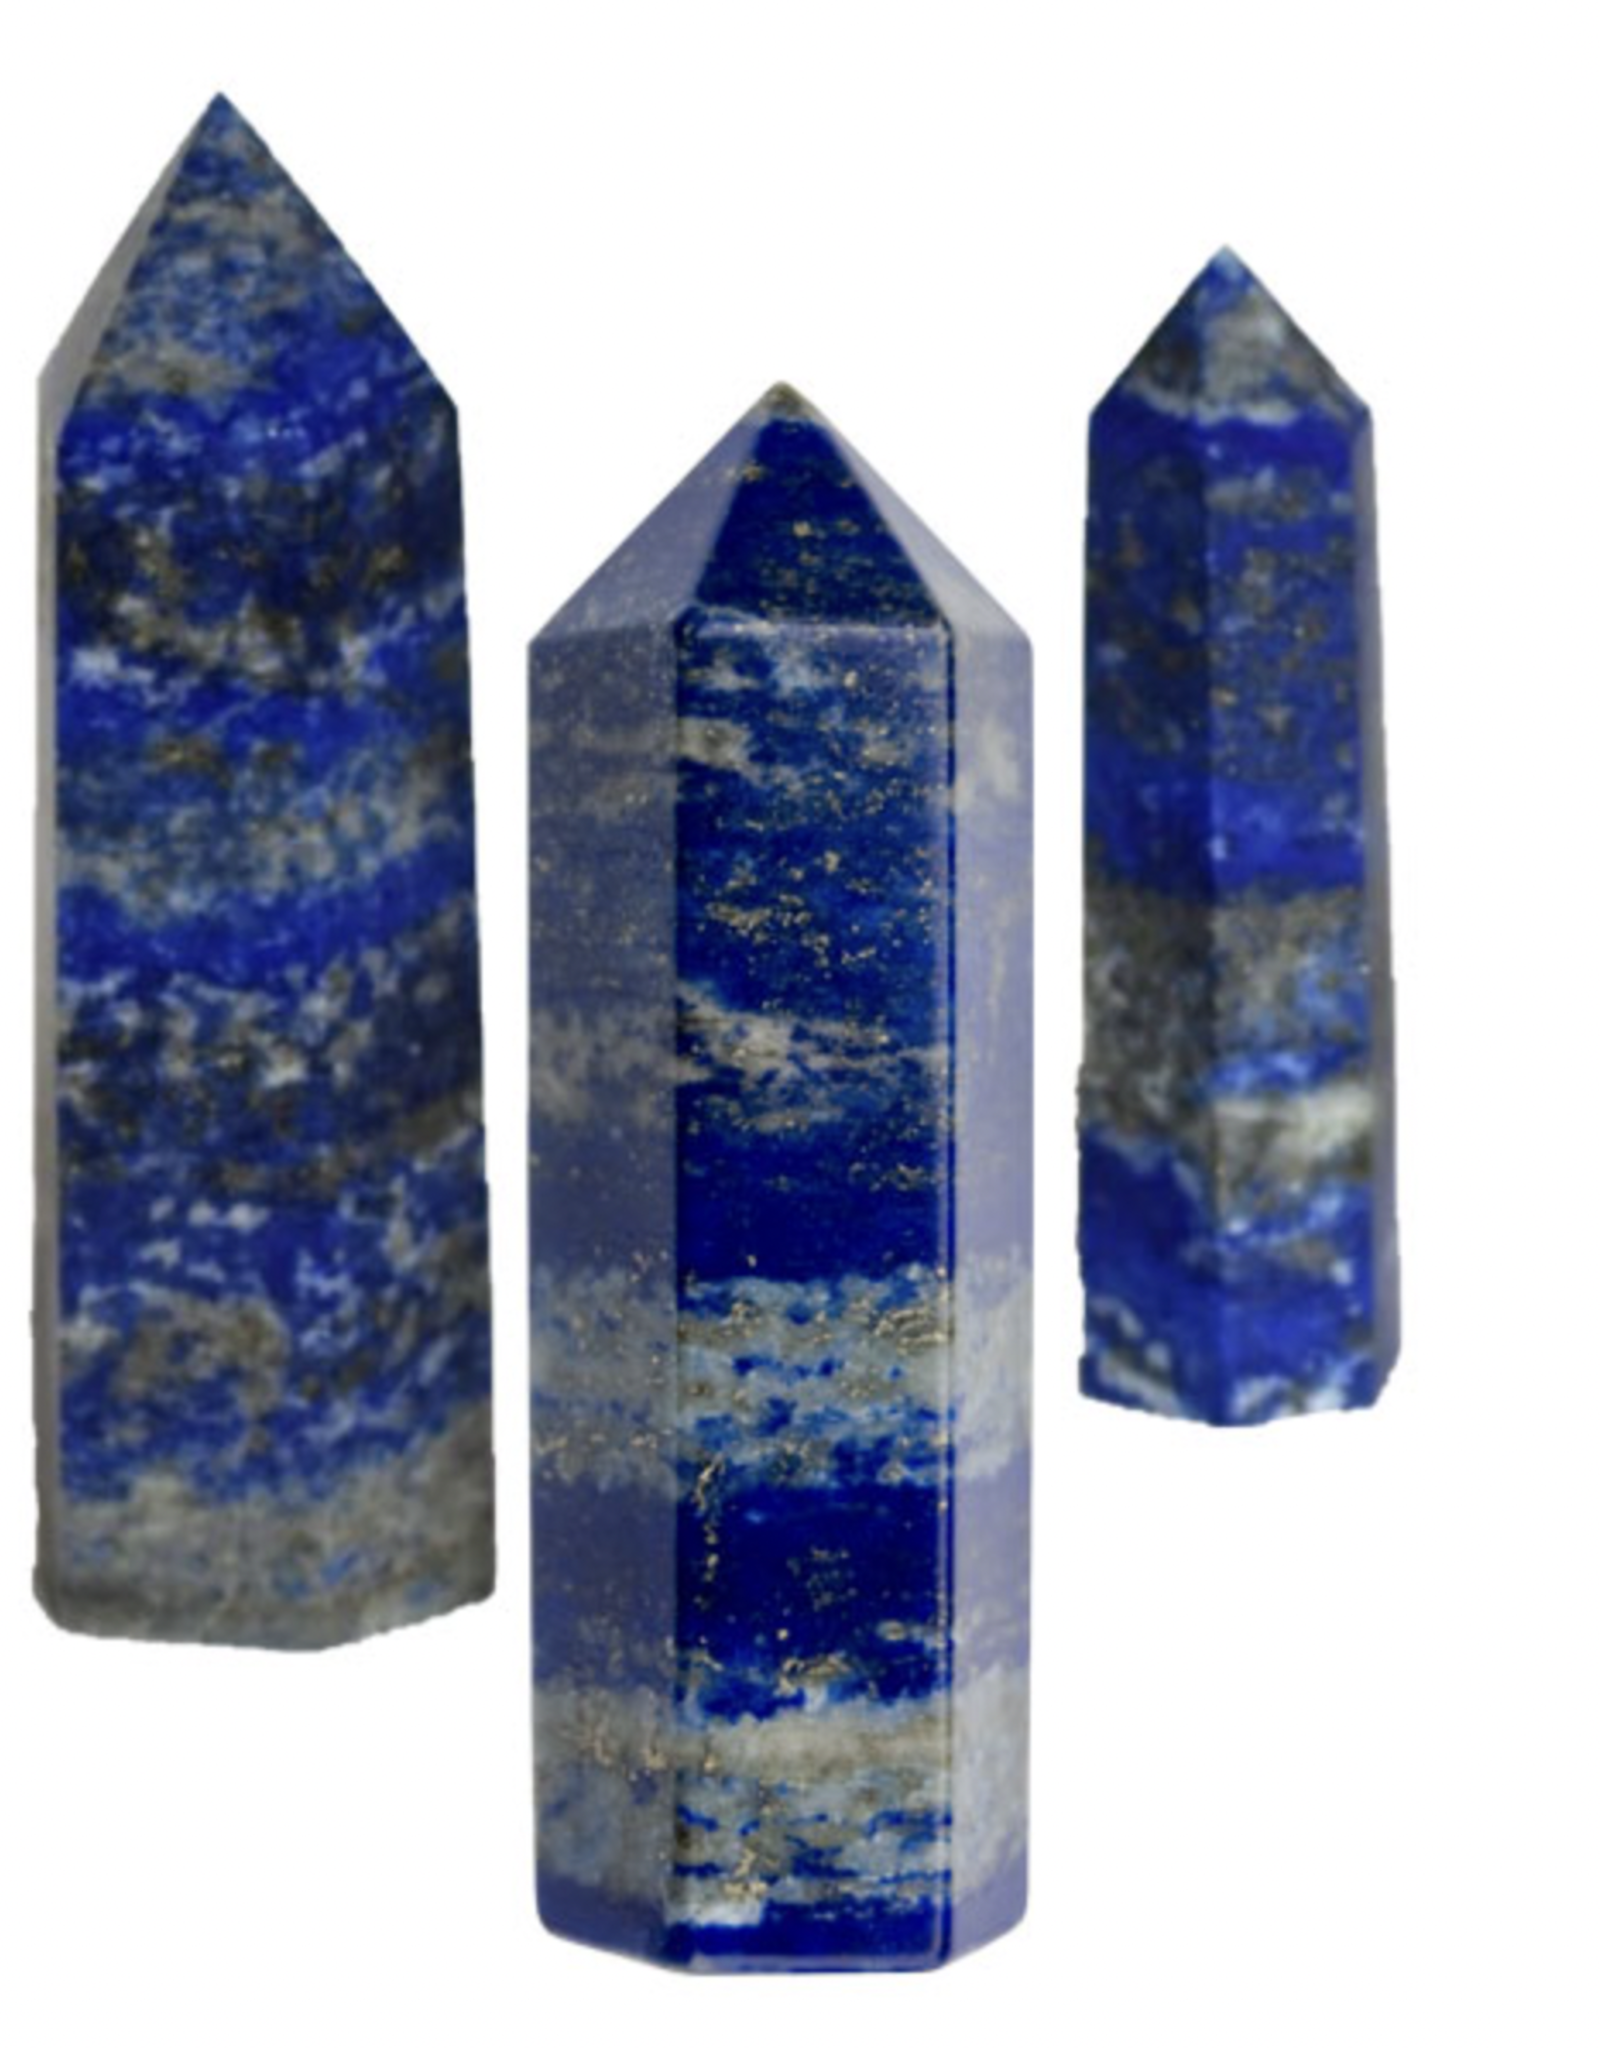 Polished Point - Lapis Lazuli